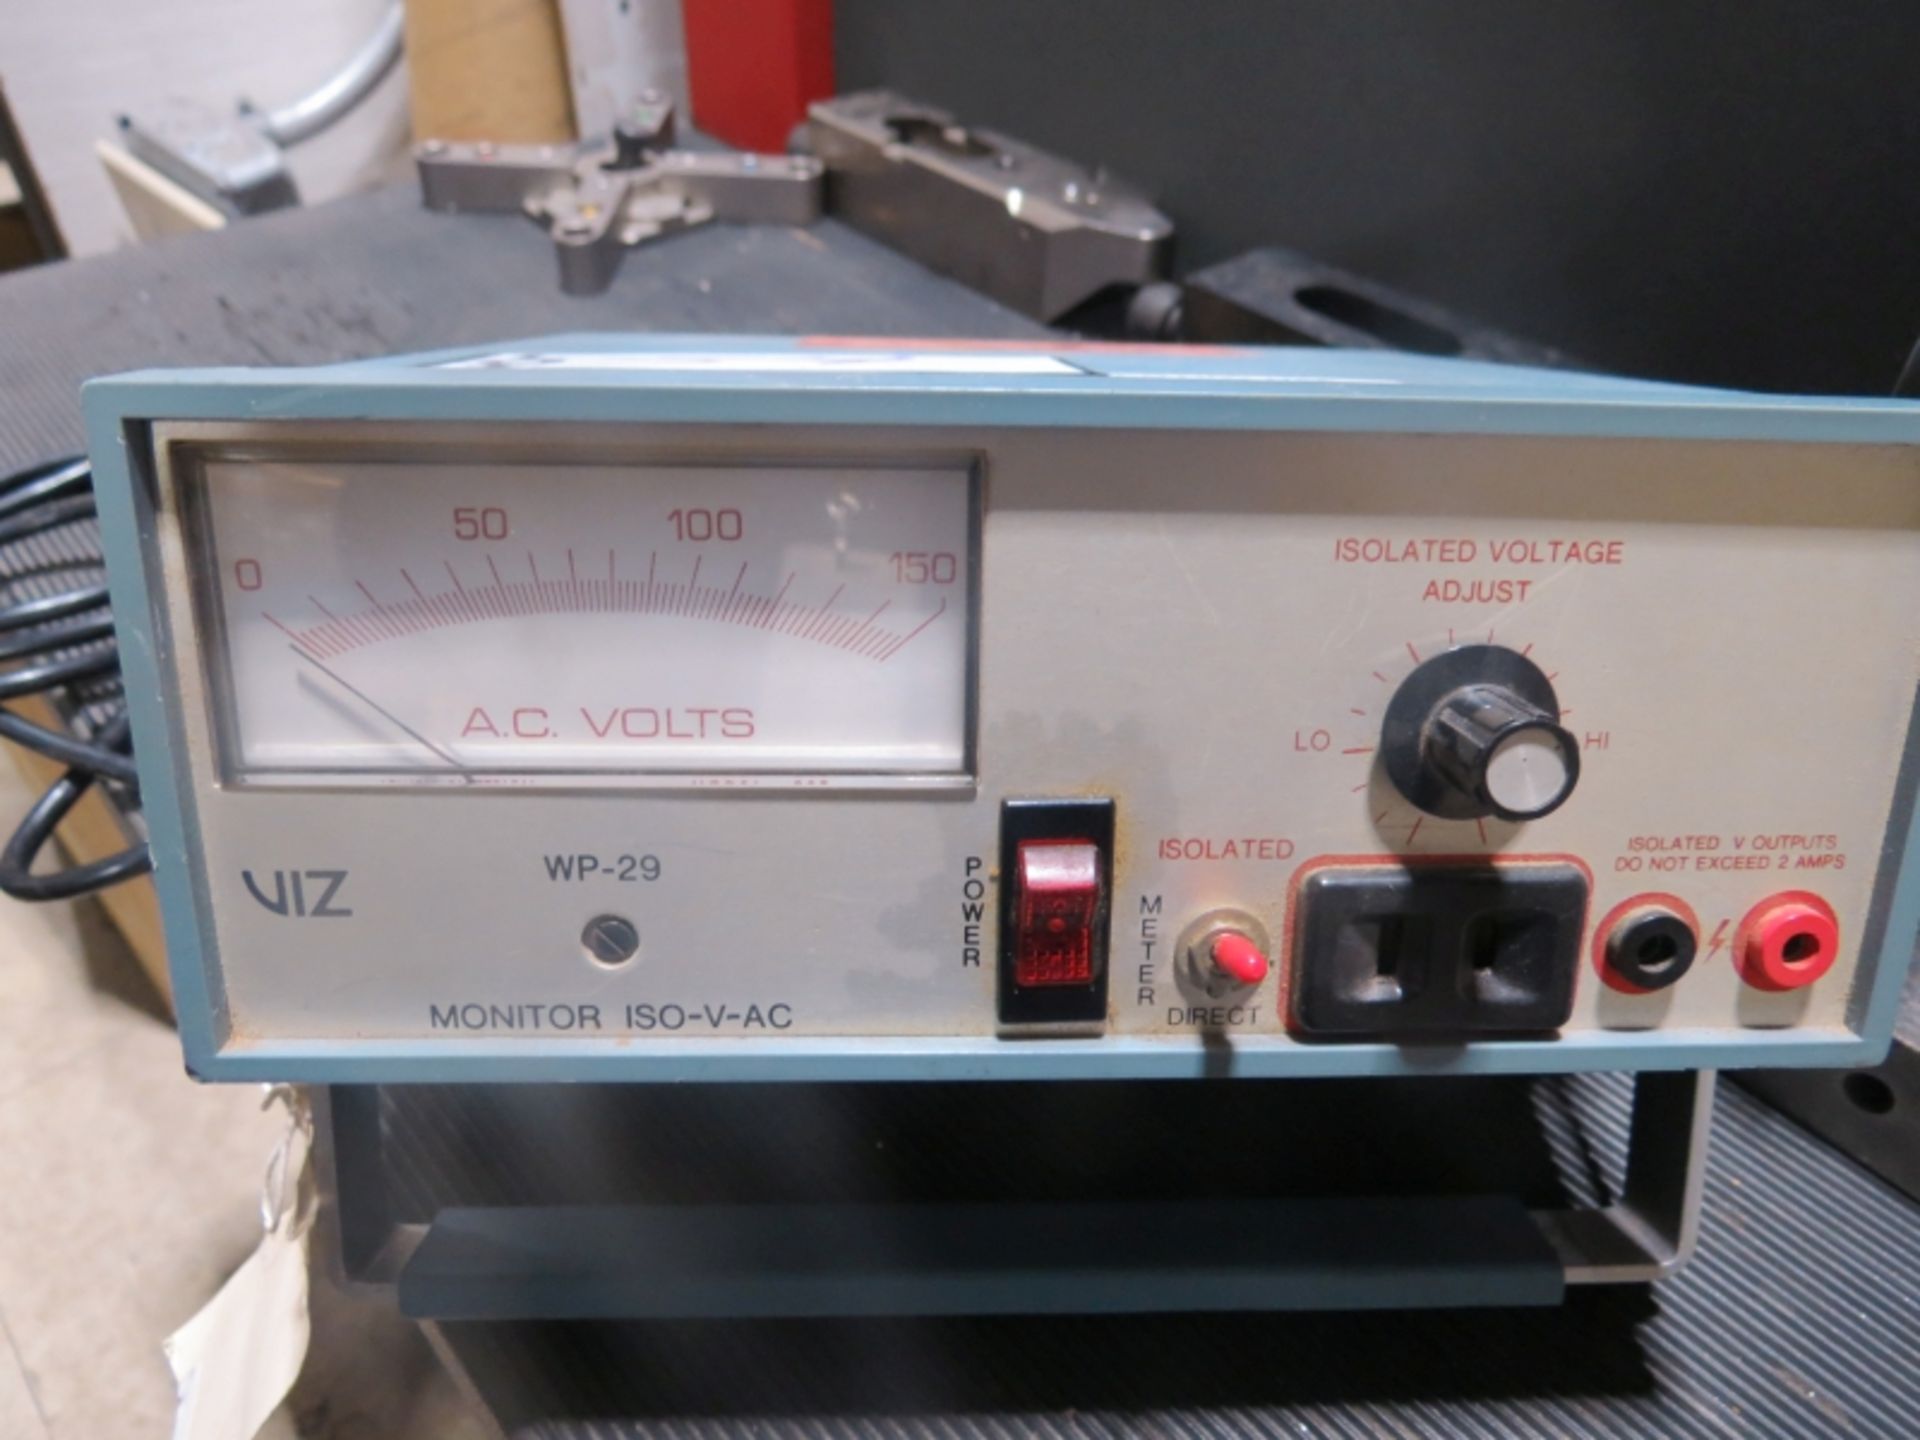 VIZ WP-29 Monitor Iso-V-AC Isolation Transformer - Bild 2 aus 2